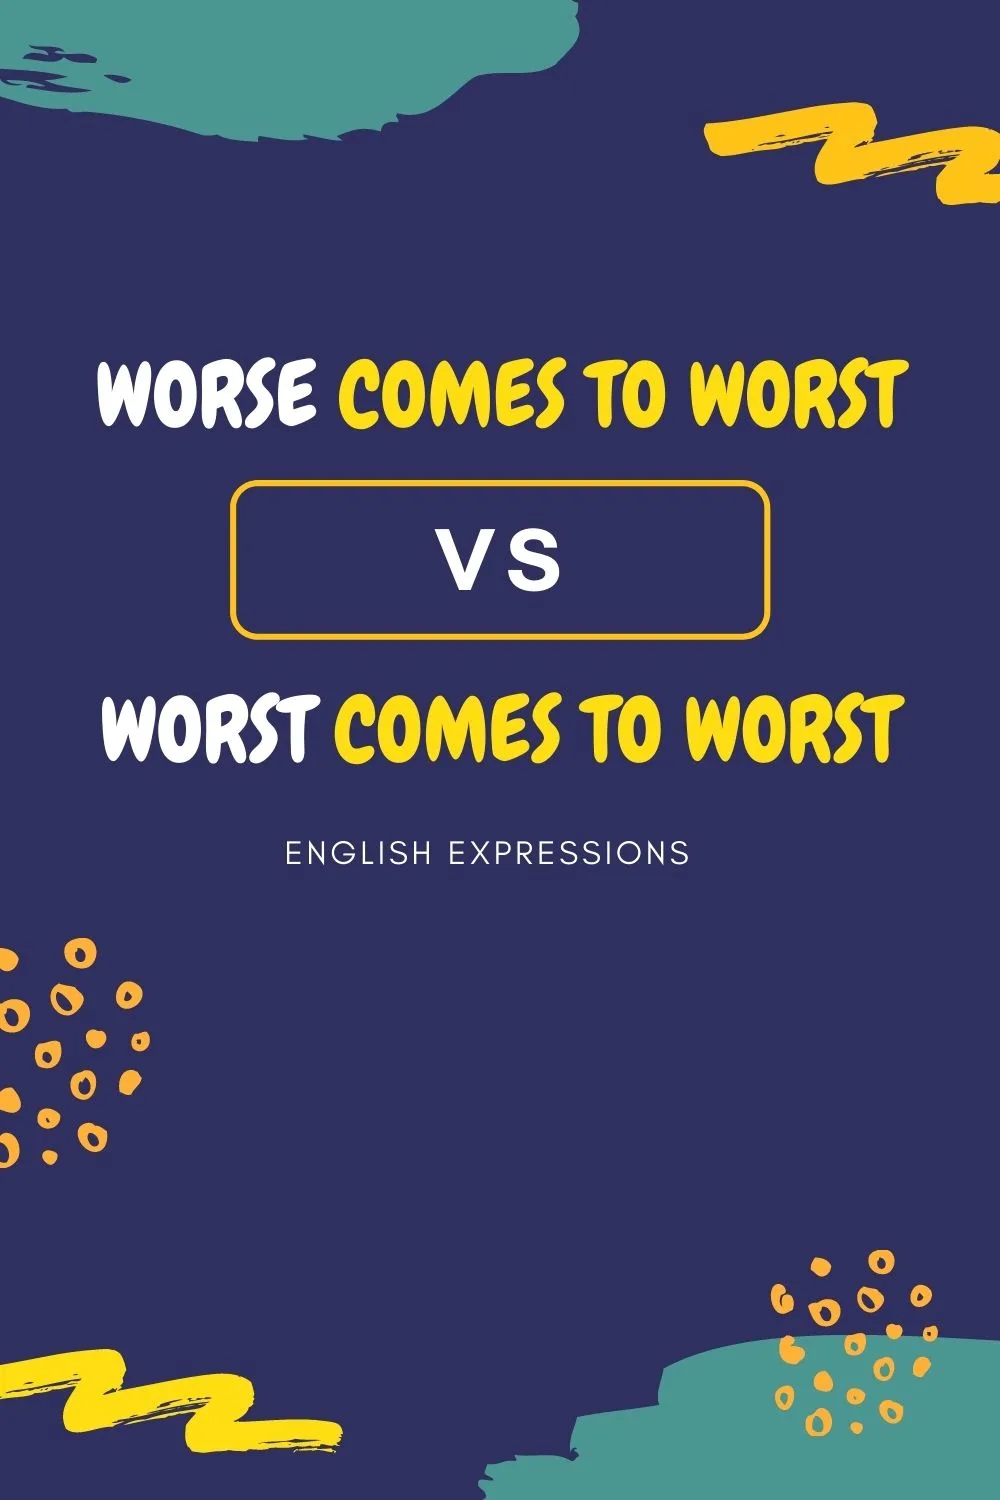 Worse comes to worst vs. worst comes to worst